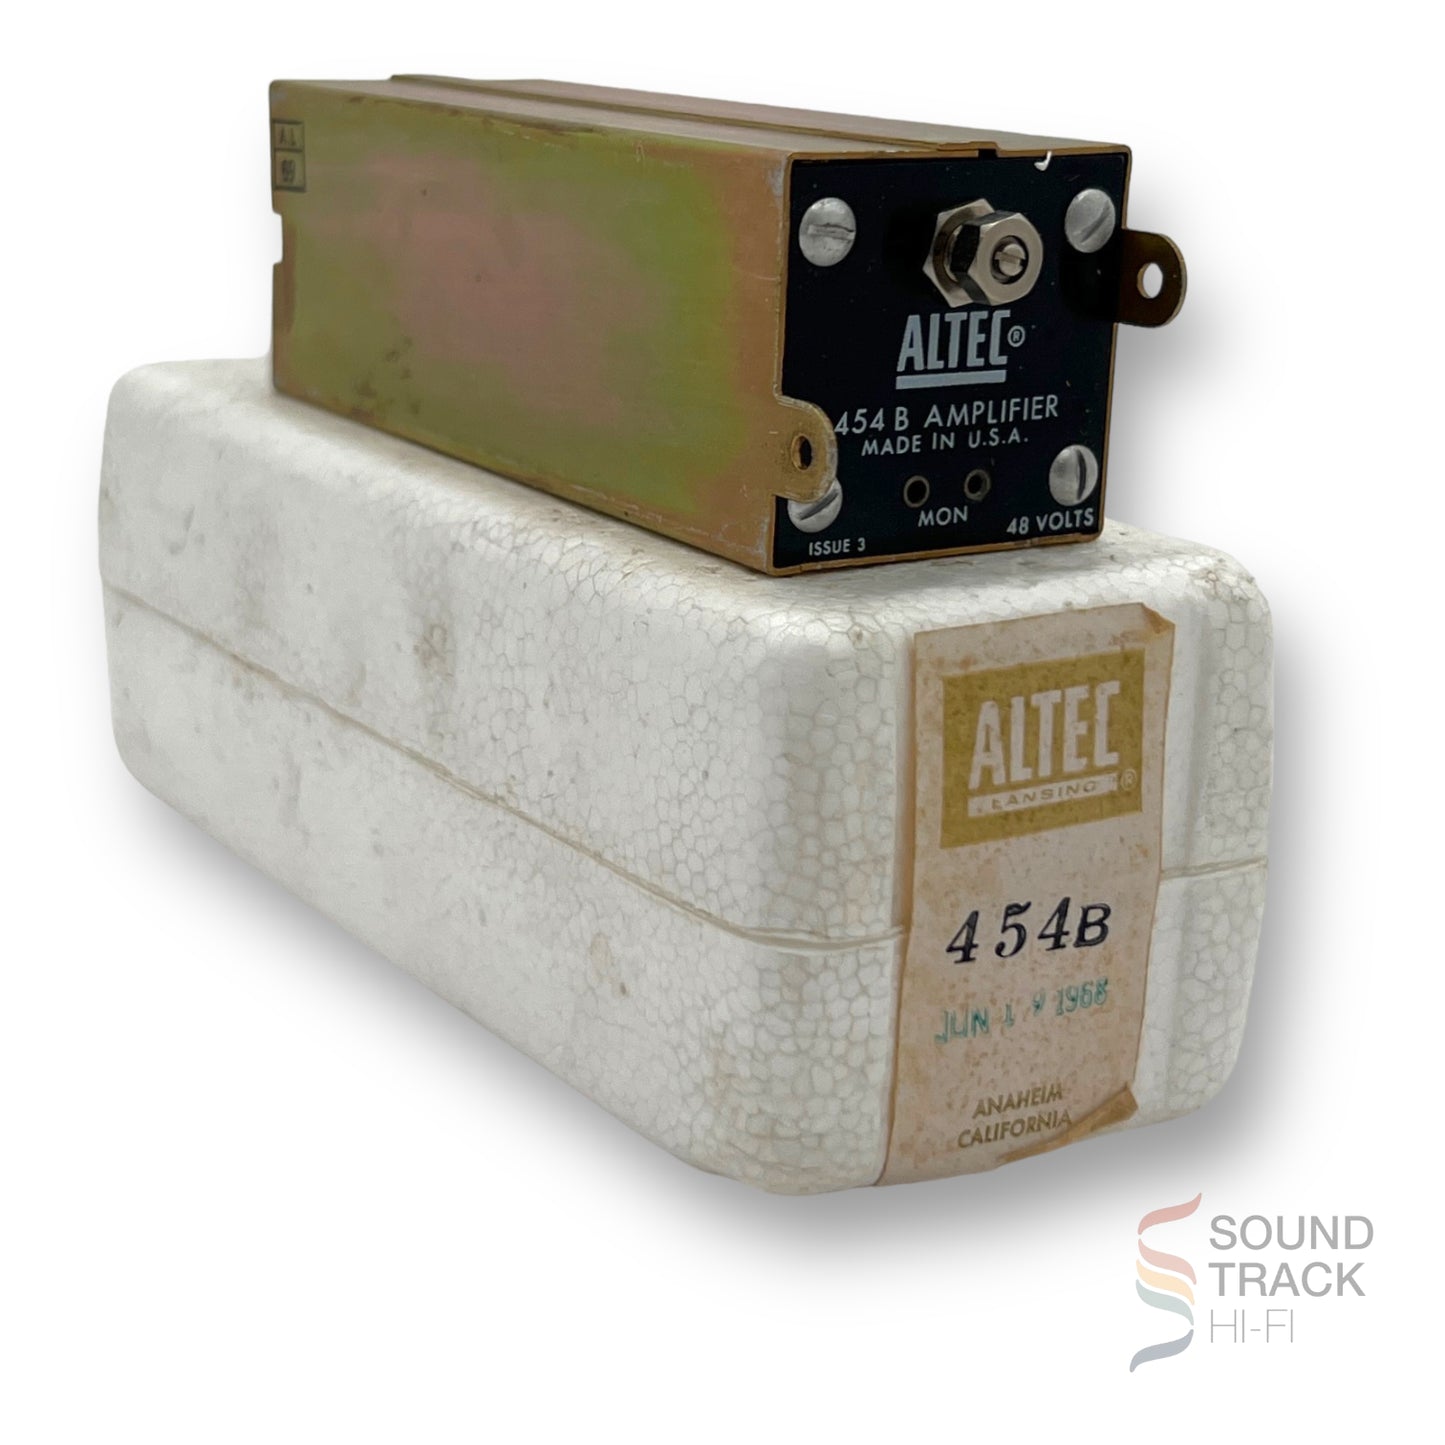 Altec Lansing Type 454B Amplifier